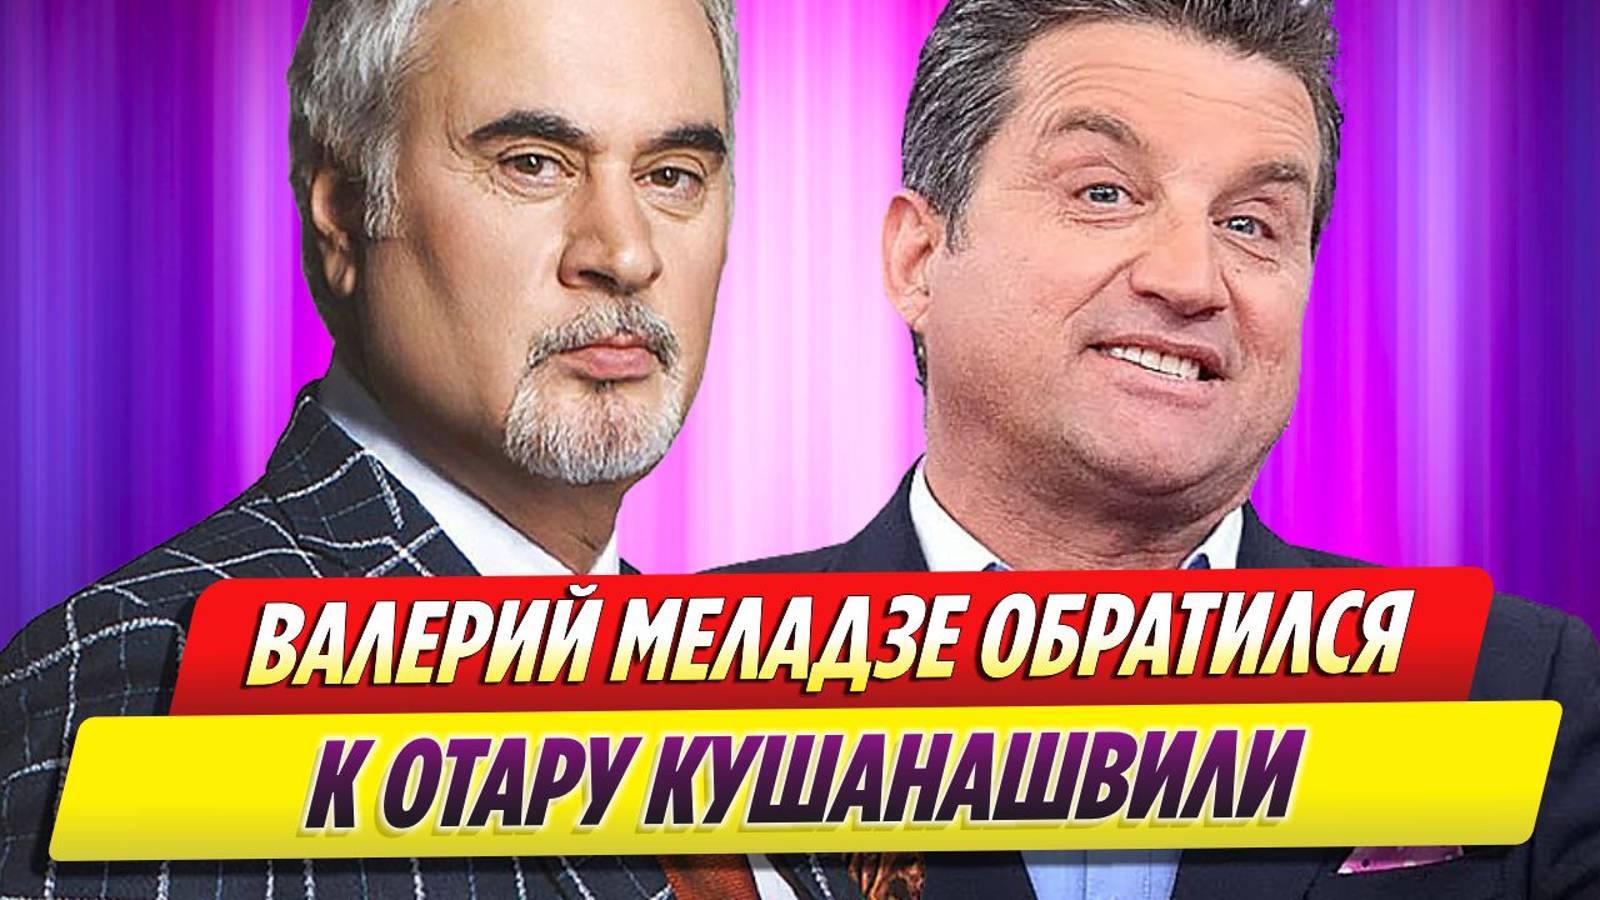 Меладзе обратился к находящемуся в больнице Отару Кушанашвили